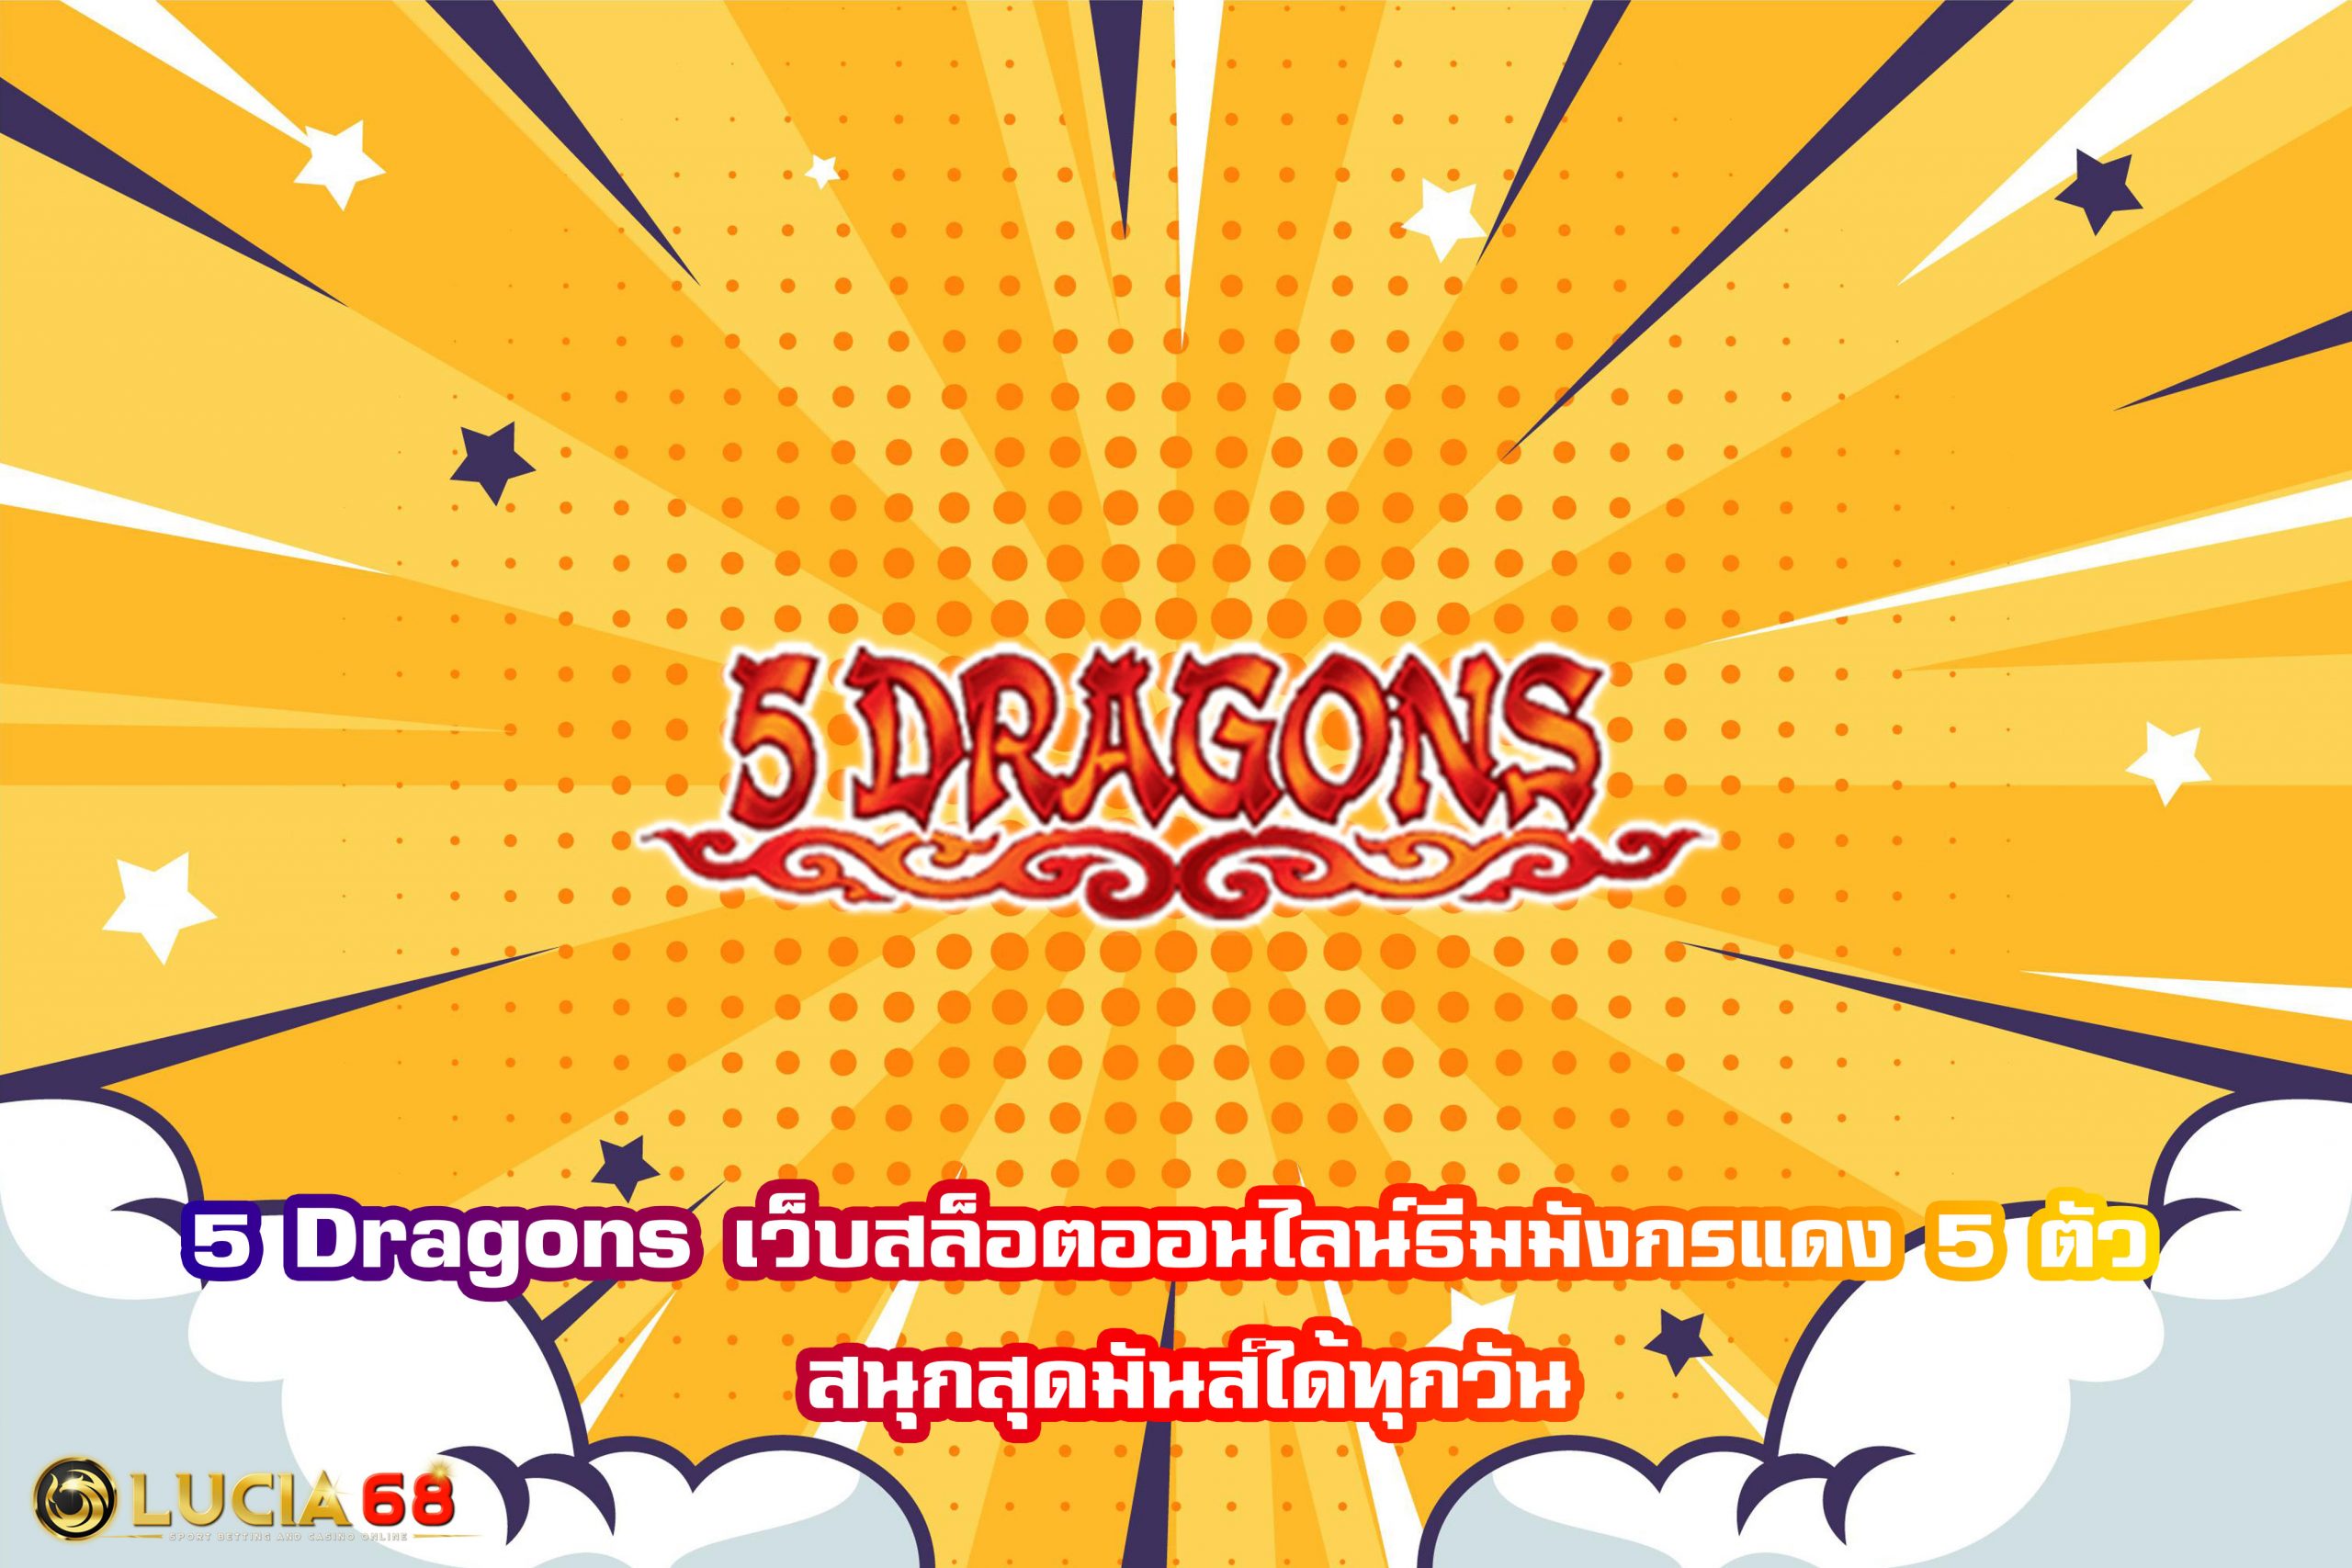 5 Dragons เว็บสล็อตออนไลน์ธีมมังกรแดง 5 ตัว สนุกสุดมันส์ได้ทุกวัน